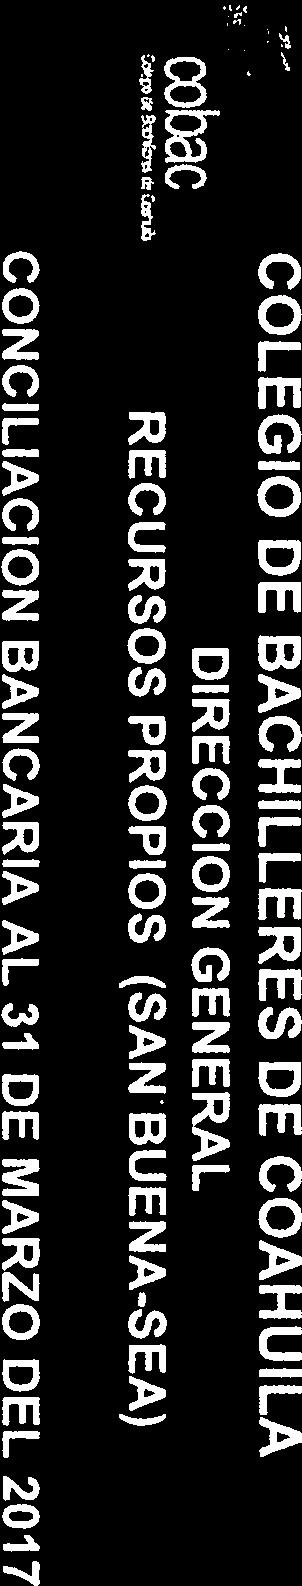 COLEGIO DE BACHILLERES DE COAHUILA DIRECCION GENERAL RECURSOS PROPIOS (SAN. BUENA-SEA) CONCILIACION BANCARIA AL 31 DE MARZO DEL 2017 CUENTA N. BANCO 195470250 BBVA BANCOMER, S.A. Sald según bancs 108,659.